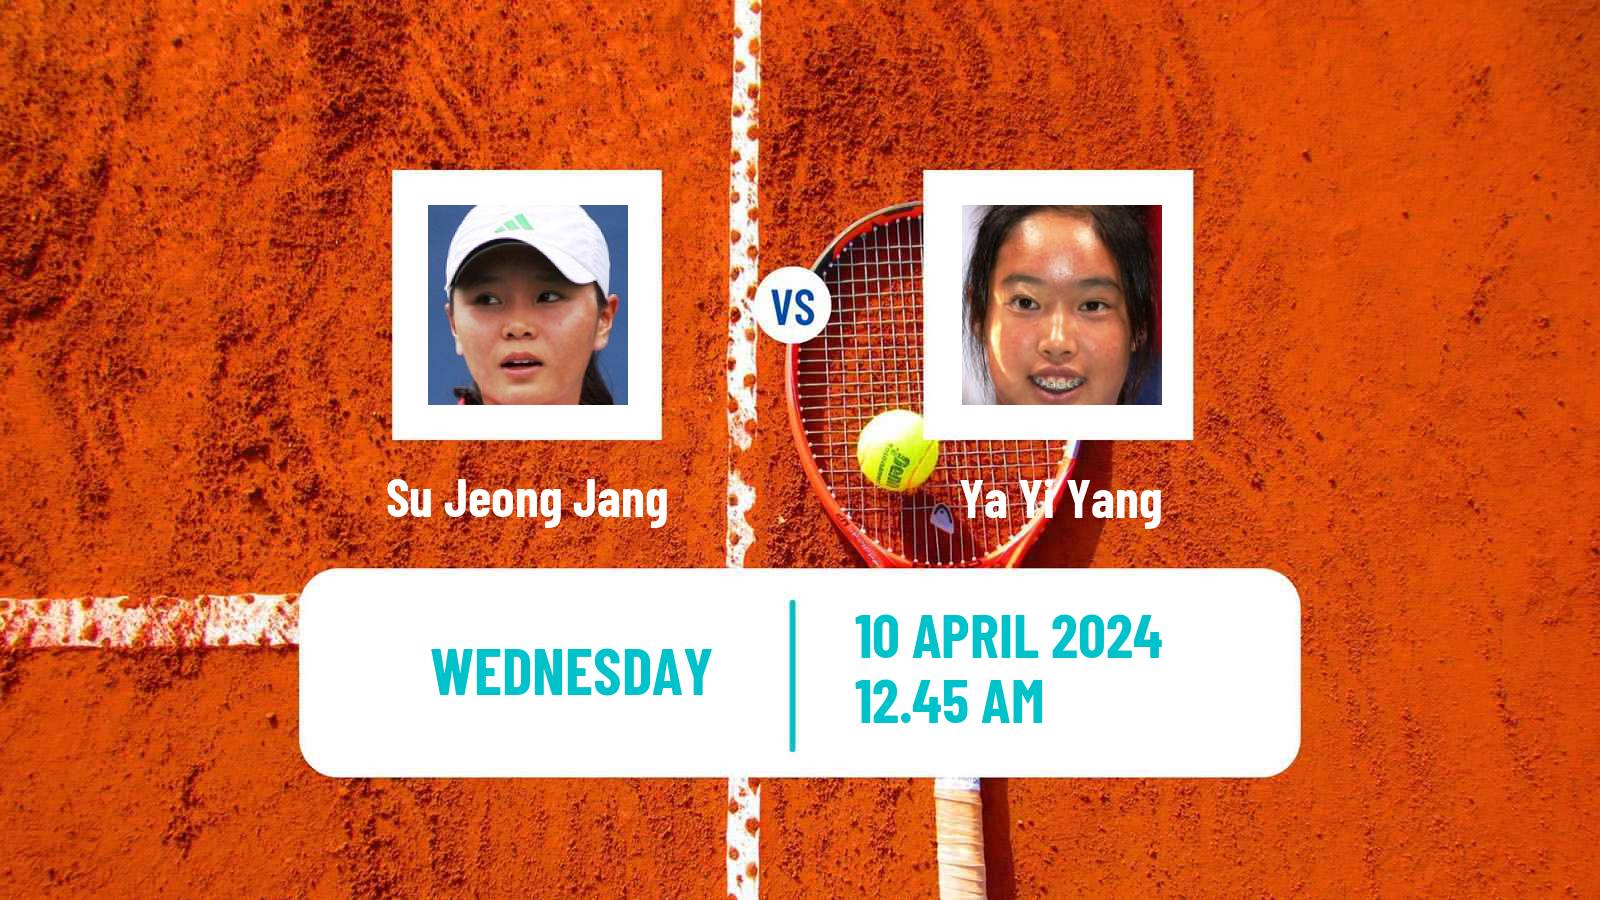 Tennis WTA Billie Jean King Cup Group I Su Jeong Jang - Ya Yi Yang